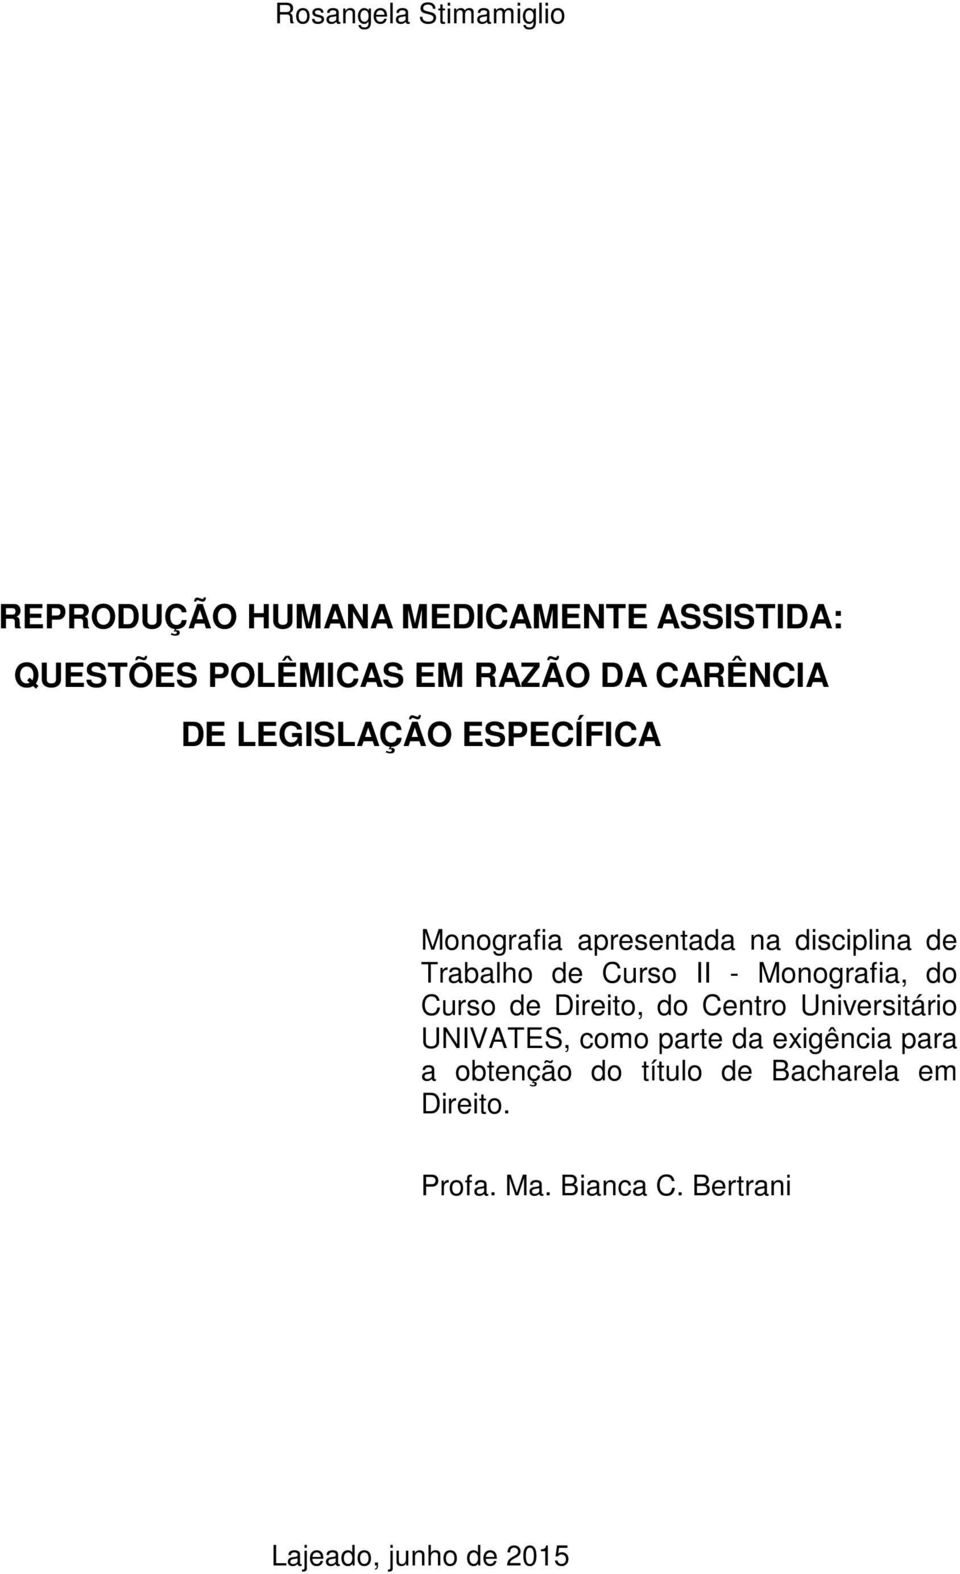 Monografia, do Curso de Direito, do Centro Universitário UNIVATES, como parte da exigência para